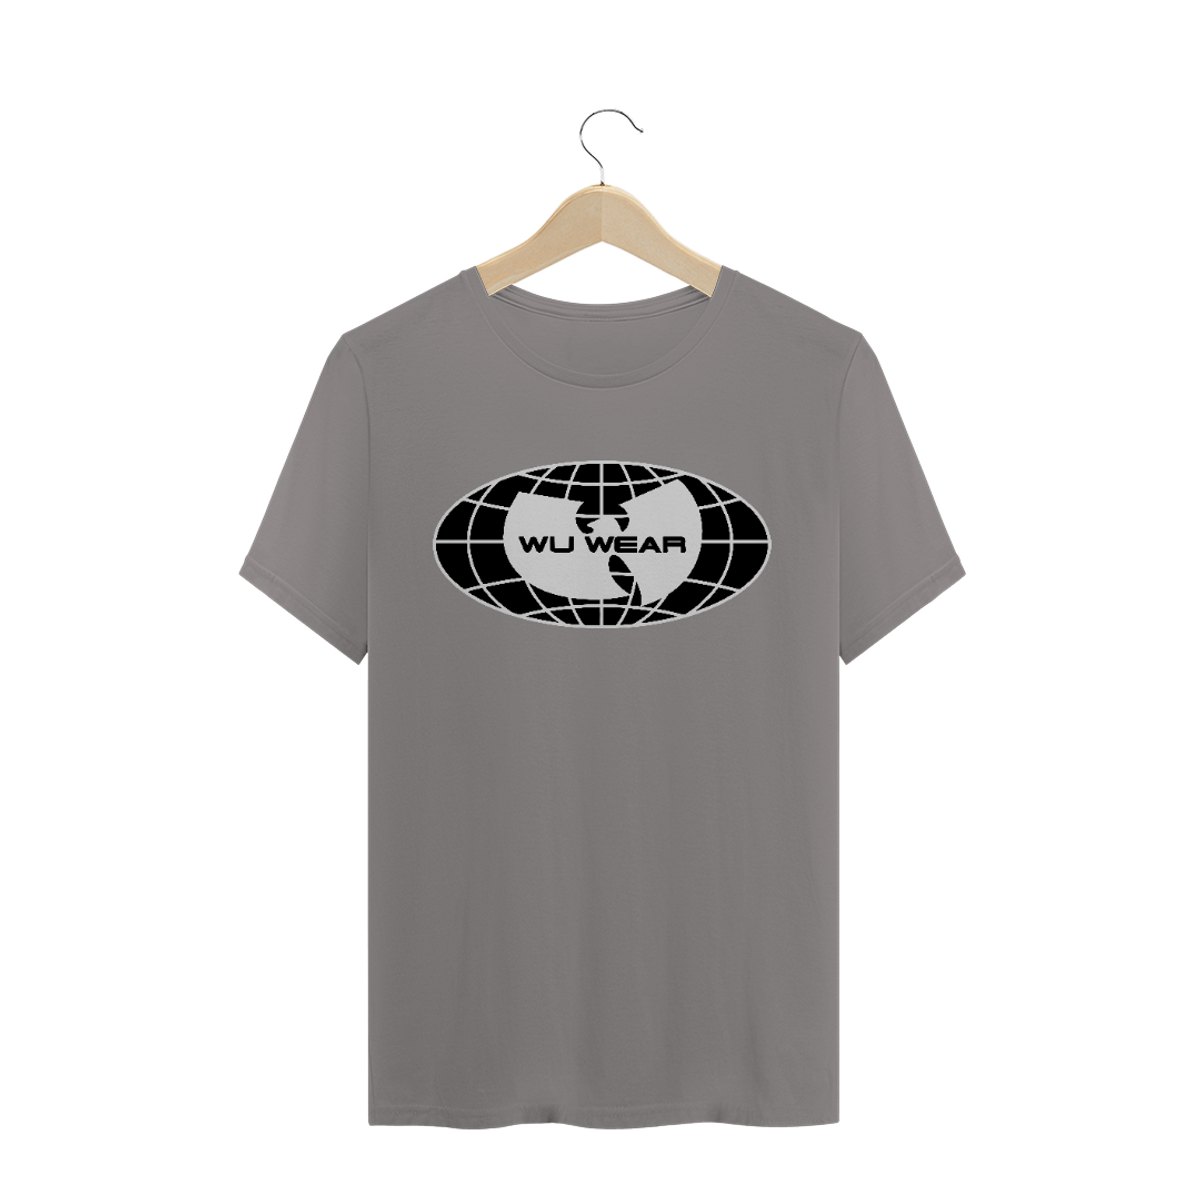 Nome do produto: Camiseta de Malha Quality Wu Tang Clan Globo Branco